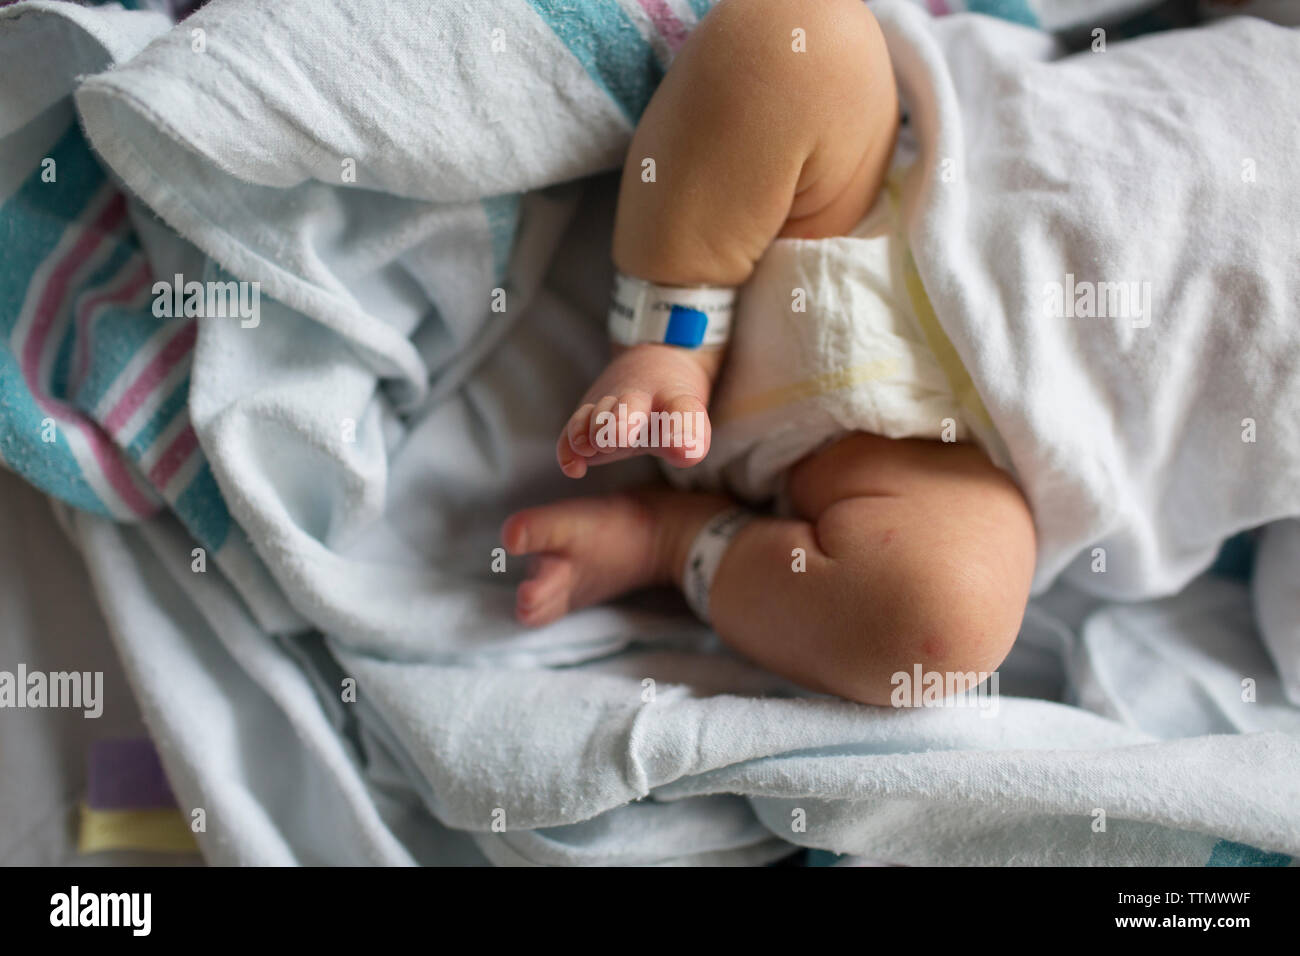 Overhead des neugeborenen Jungen Beine, Füße, Zehen im Krankenhaus Babykörbchen Stockfoto